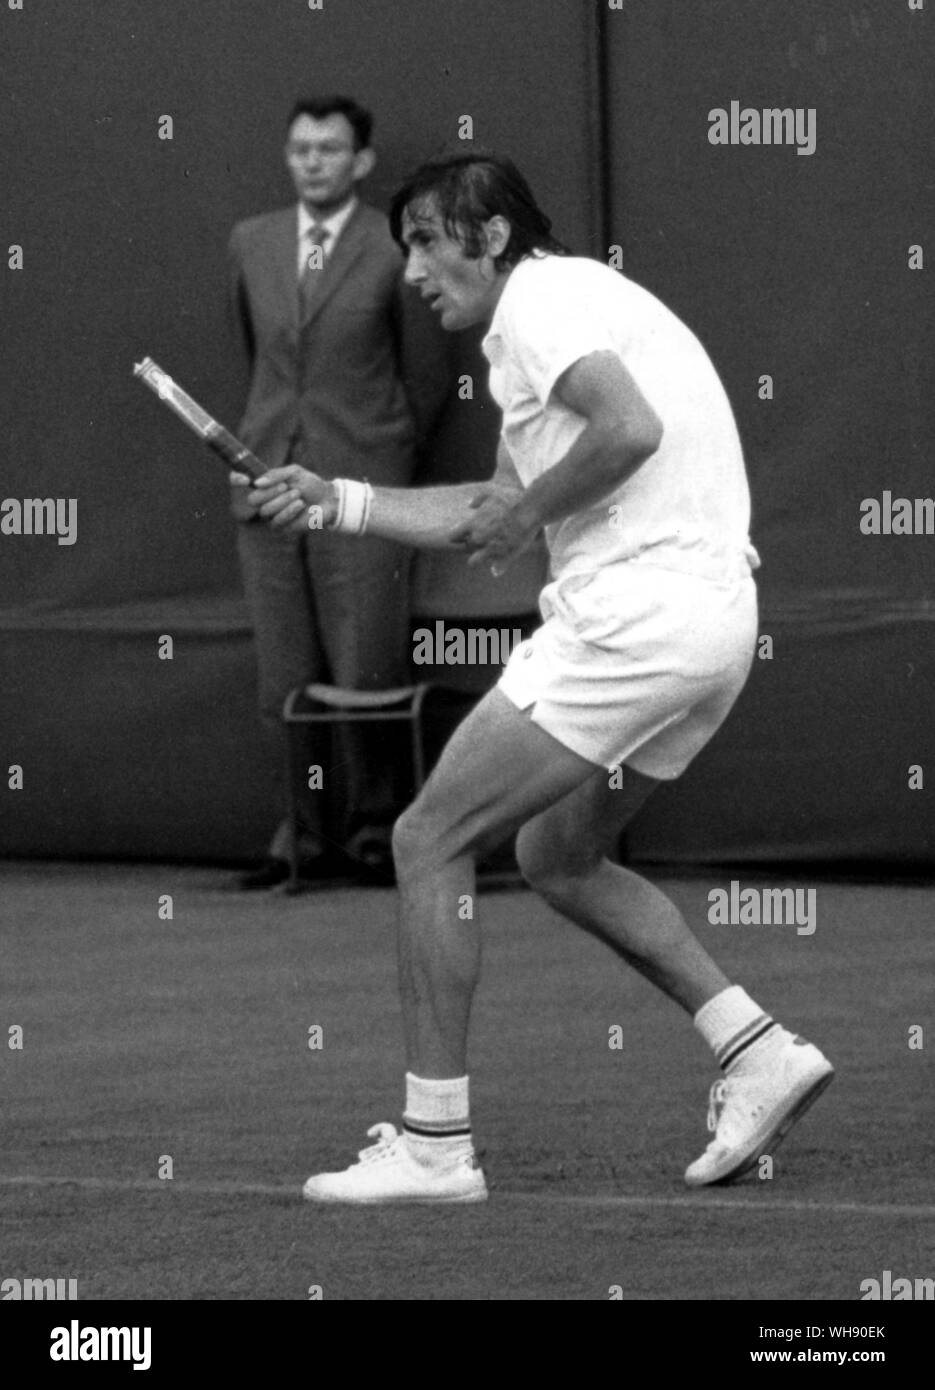 Un coup de chance - Ile Nastase sur une cour extérieure à Wimbledon 1971, était à l'avant de la ligne de base et la tête de la raquette a éclaté à l'impact et s'est rendu sur le net. Nastase, toujours de terminer la course, ne détient que la tige. Banque D'Images